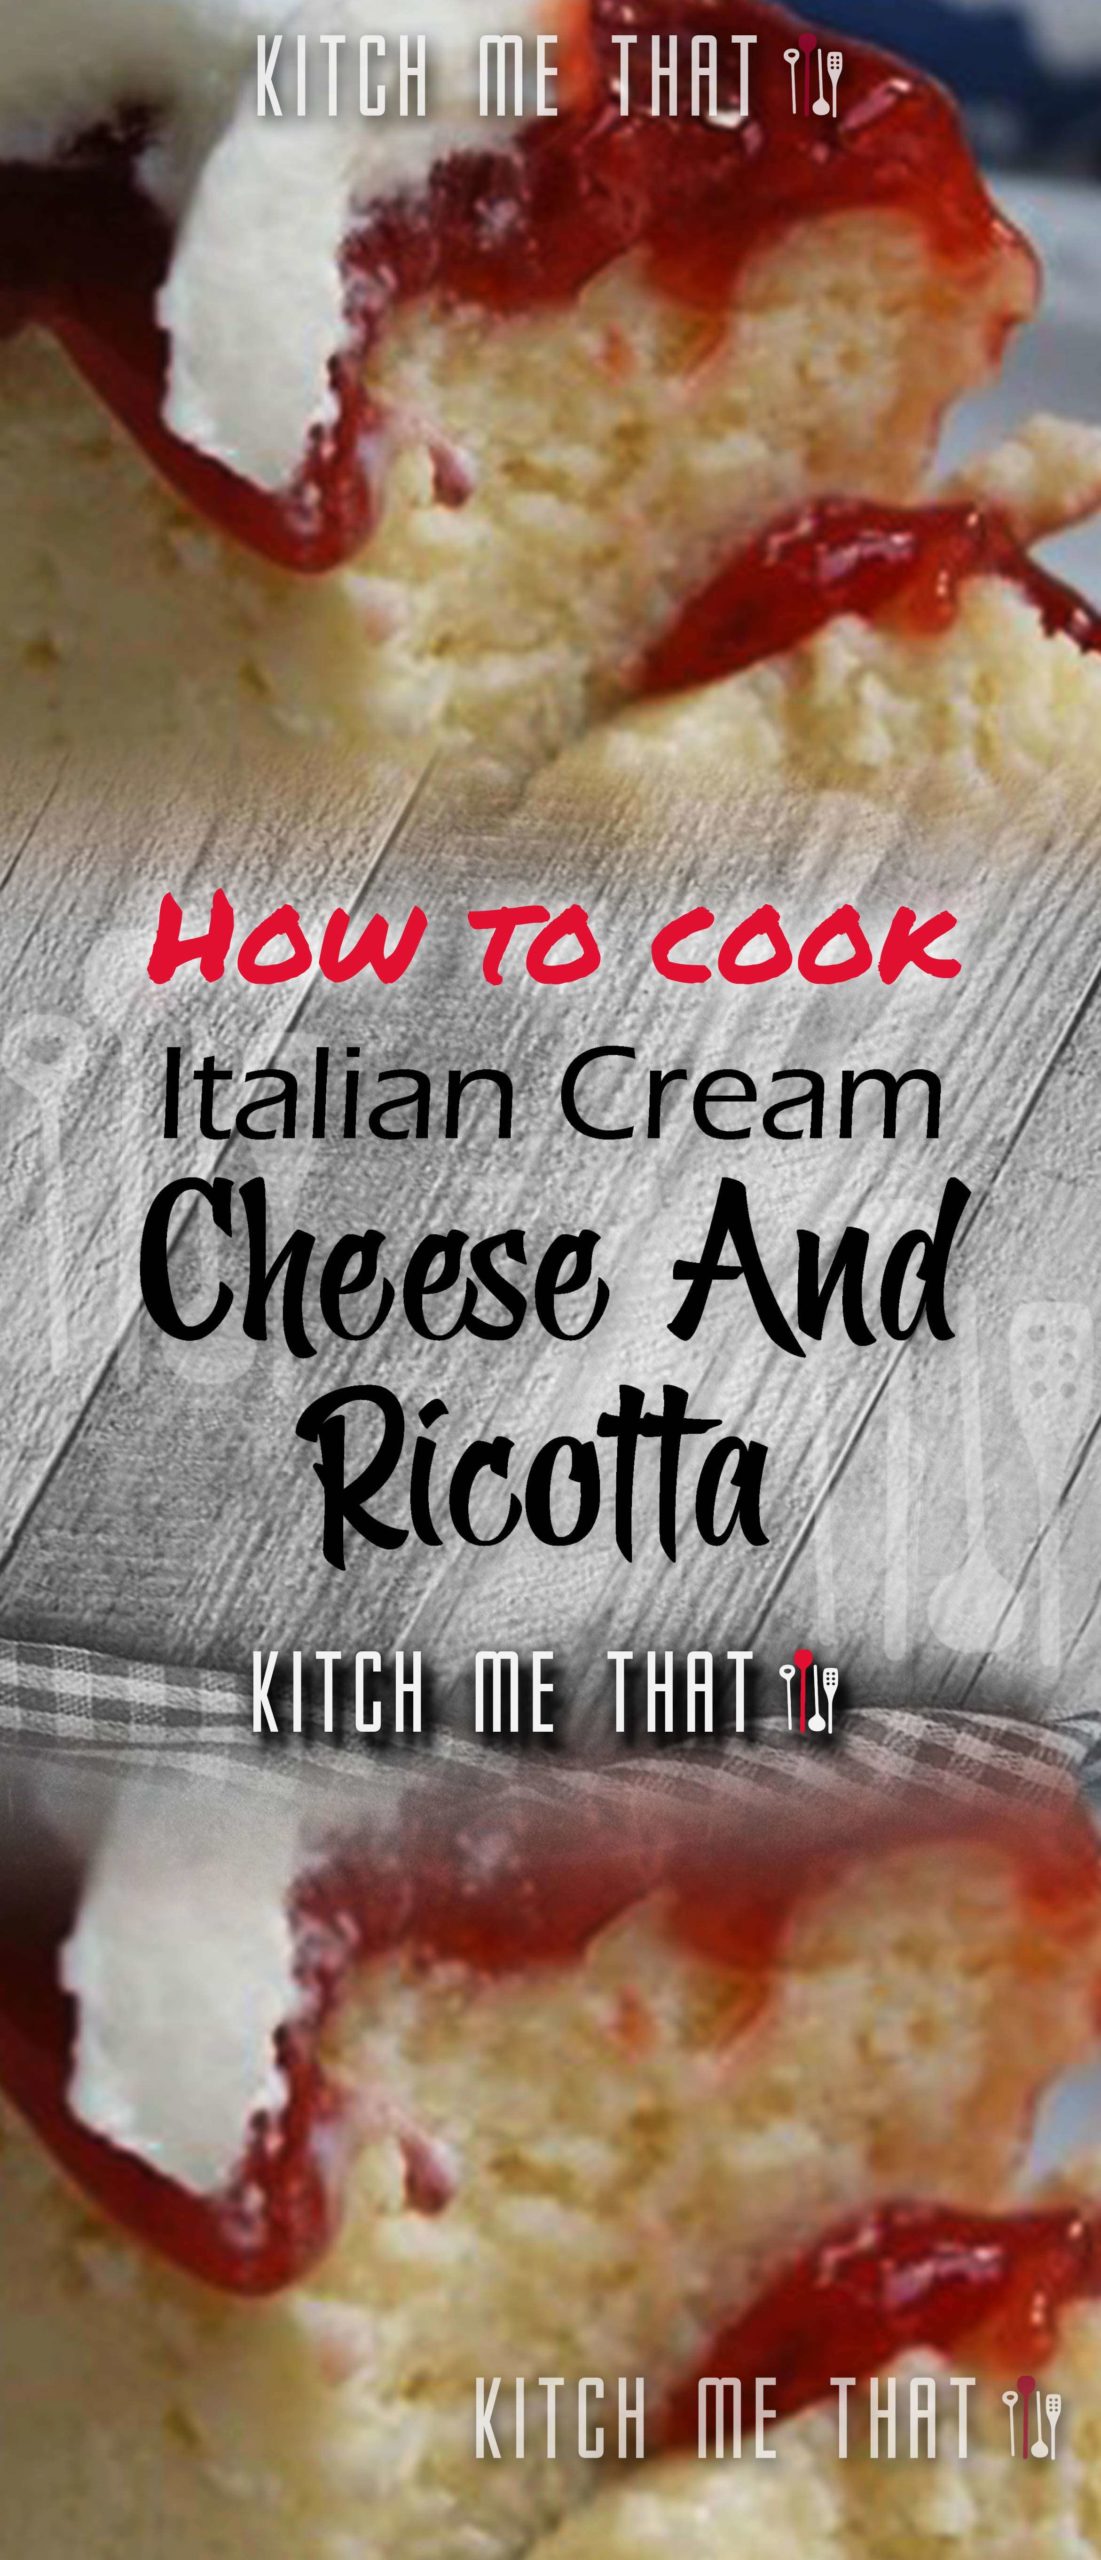 Classic Italian Cream Cheese And Ricotta Cheesecake